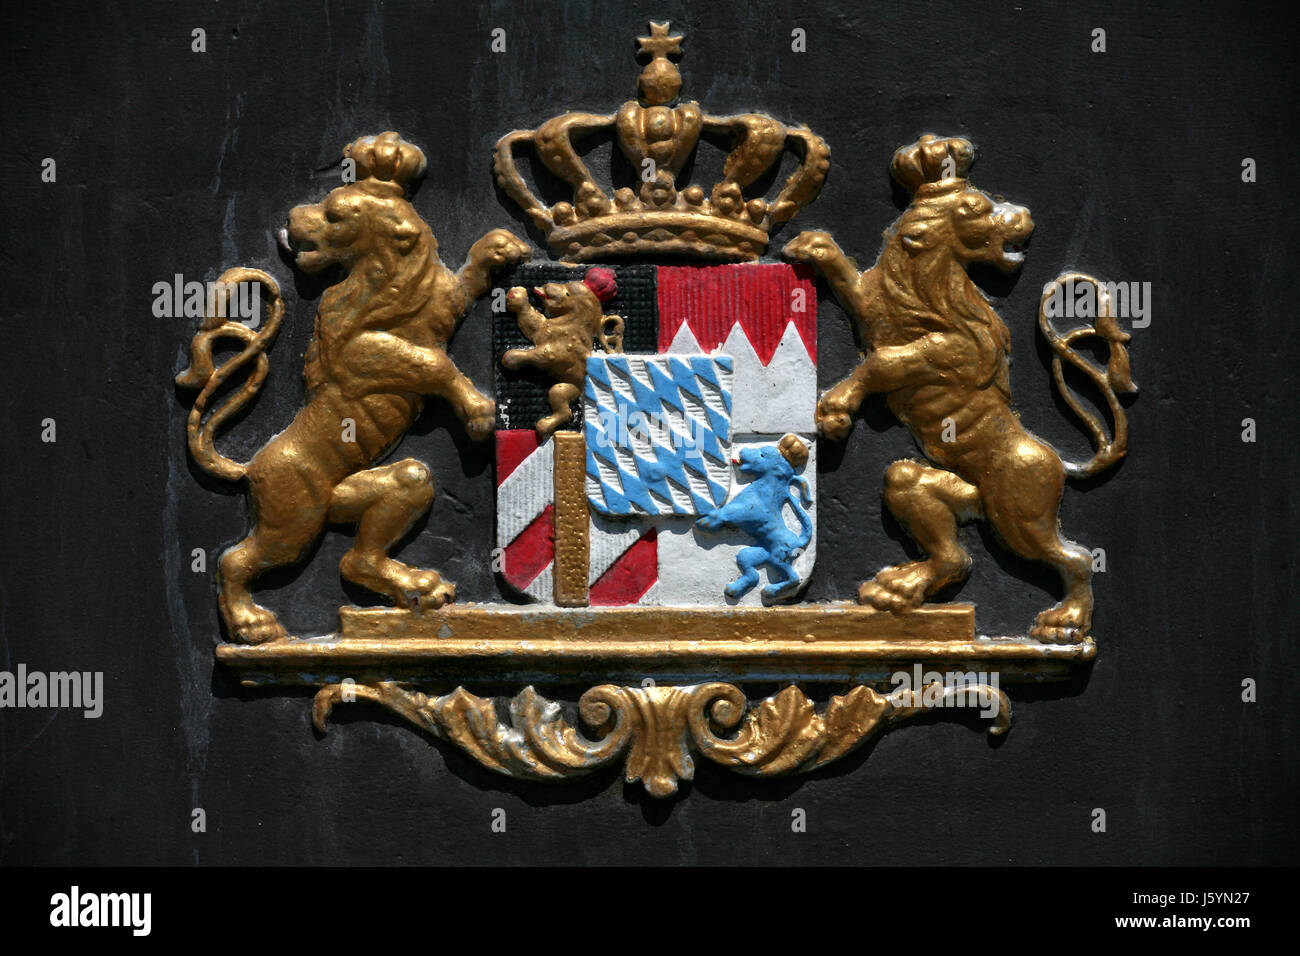 Héraldique emblème lions bavière allgaeu Allemagne République fédérale allemande de francs Banque D'Images